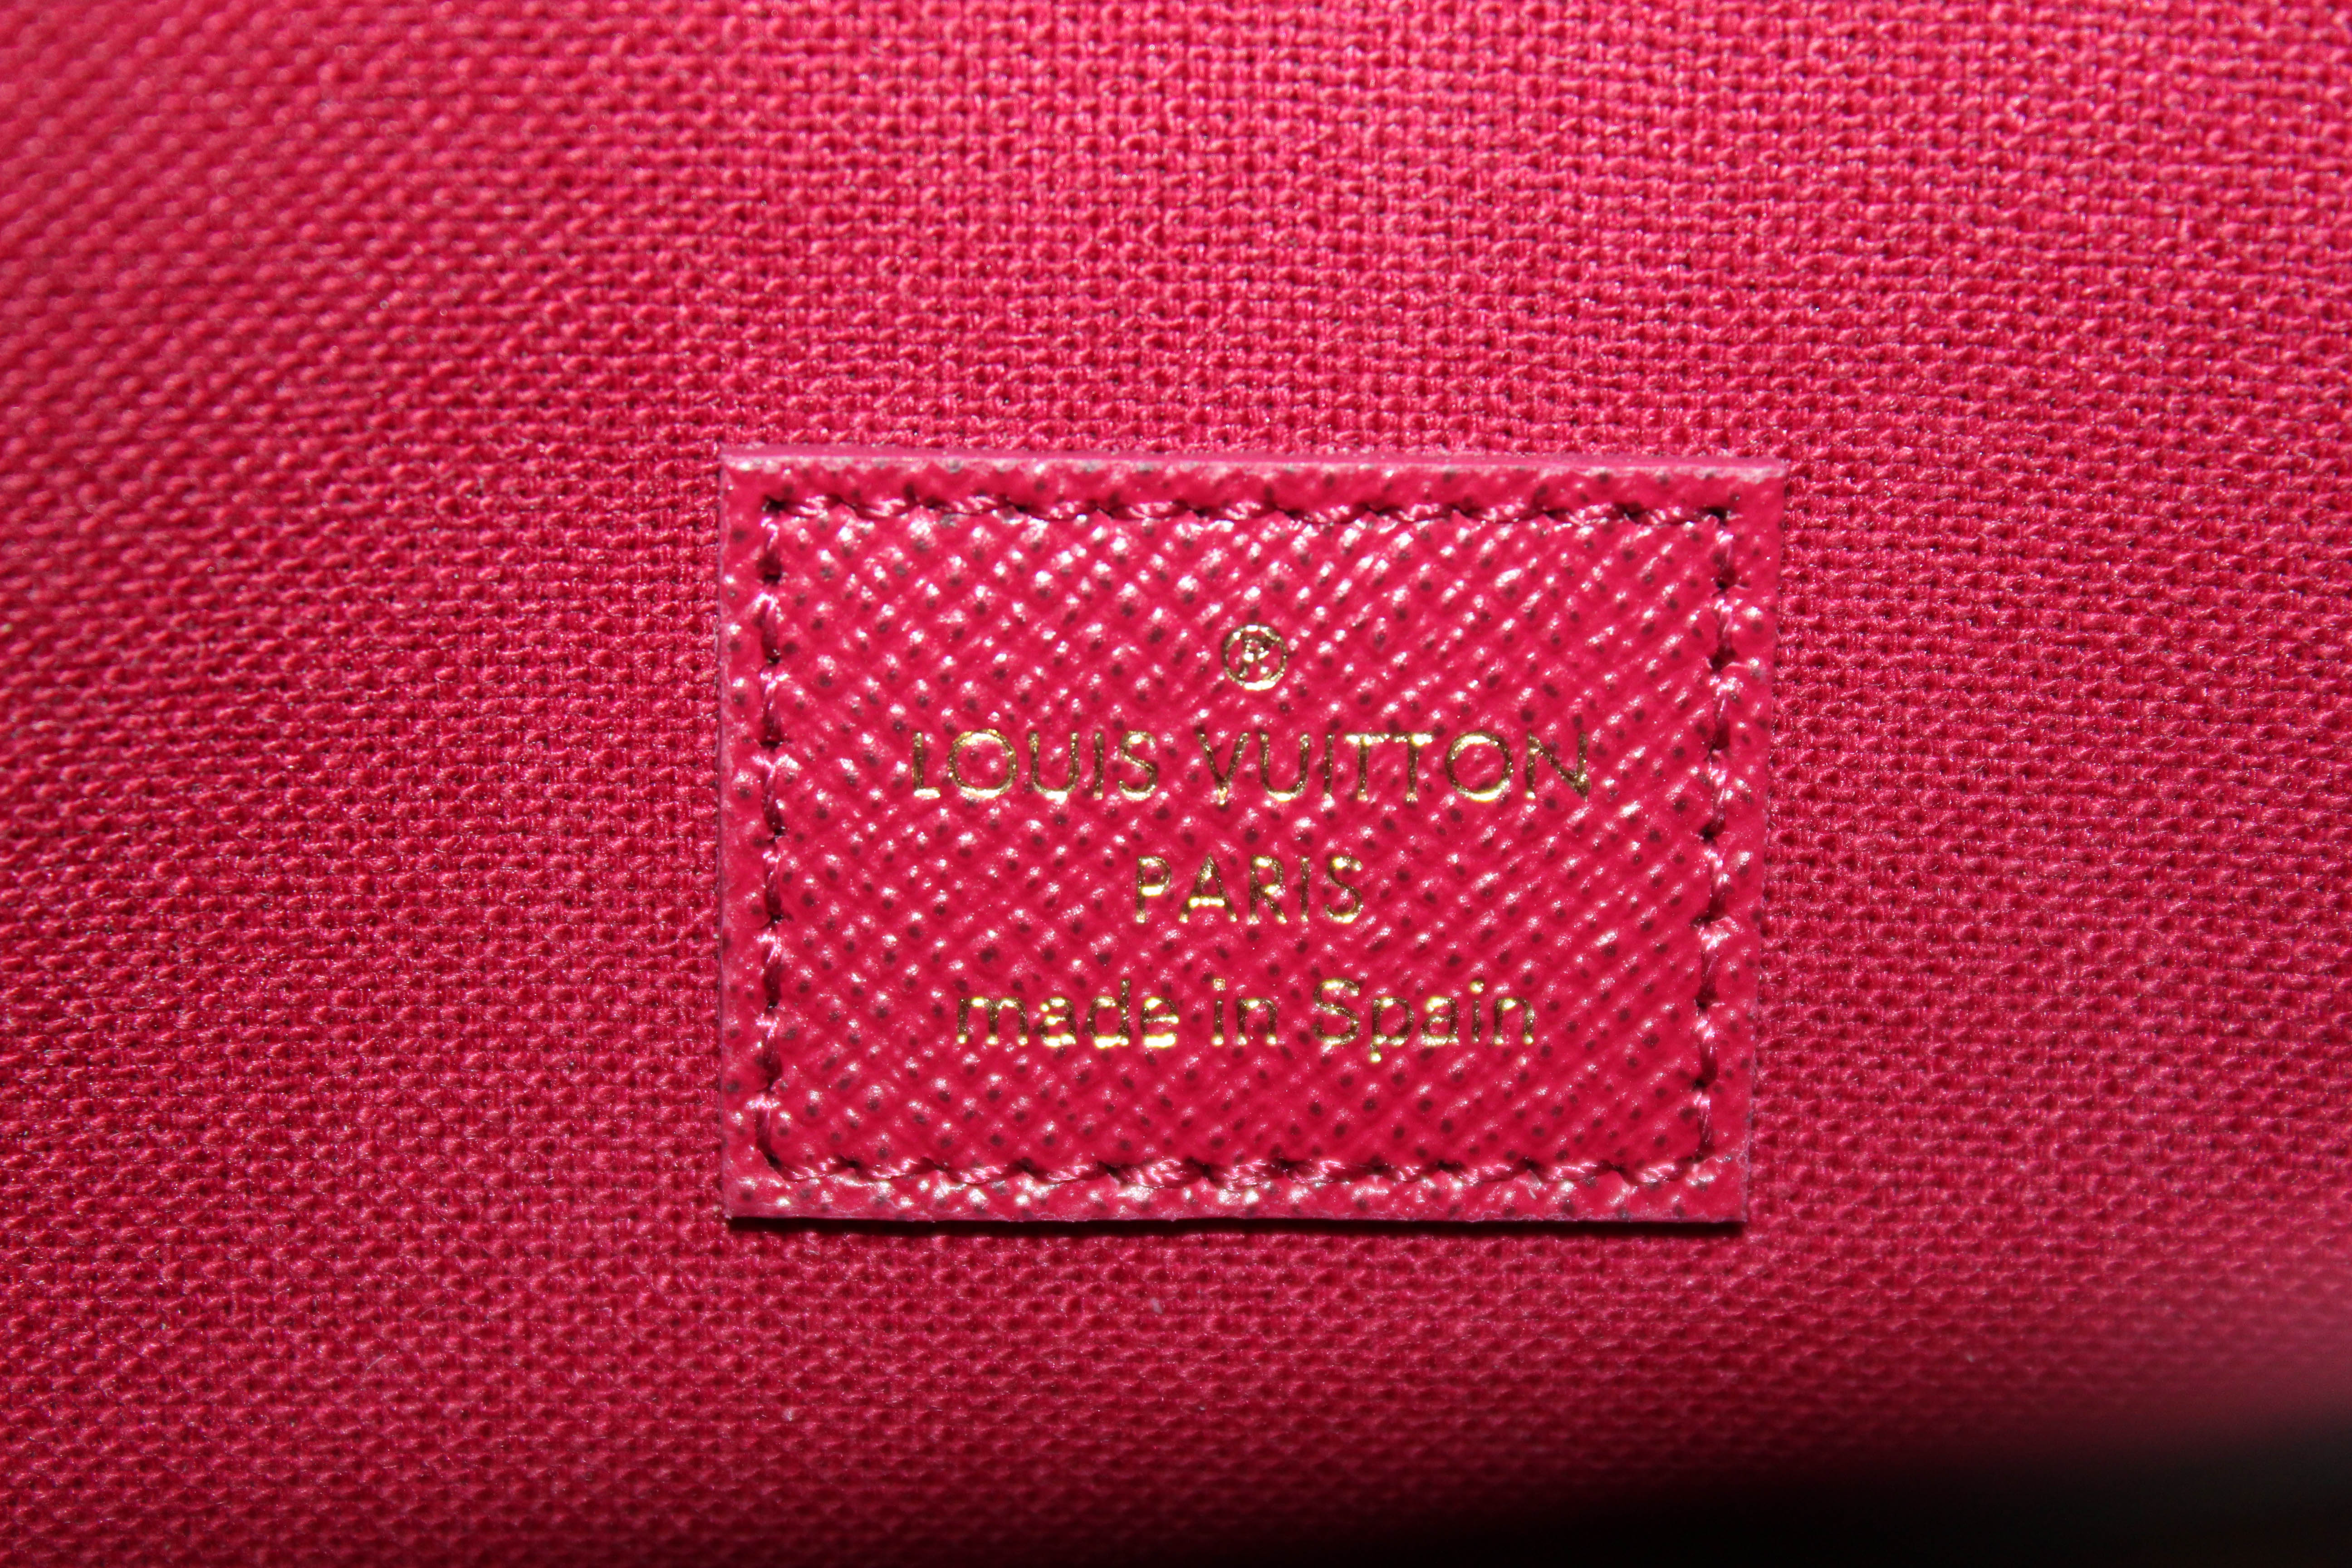 Authentic New Louis Vuitton Classic Monogram Felicie Pochette Bag